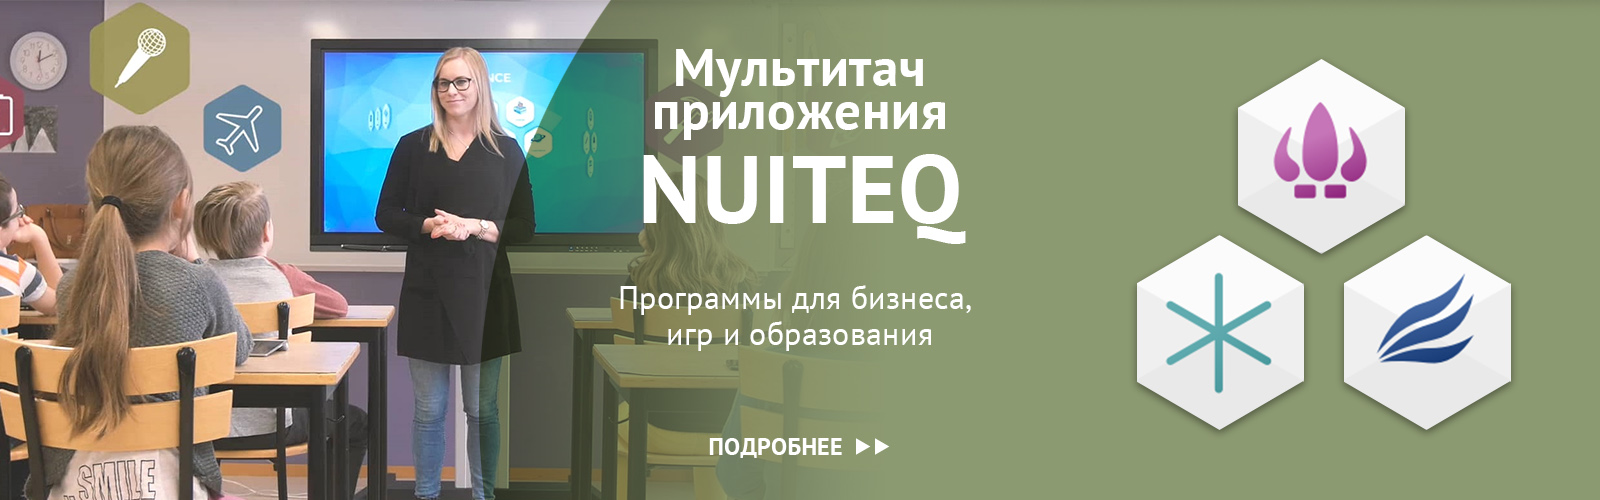 Мультитач приложения Nuiteq